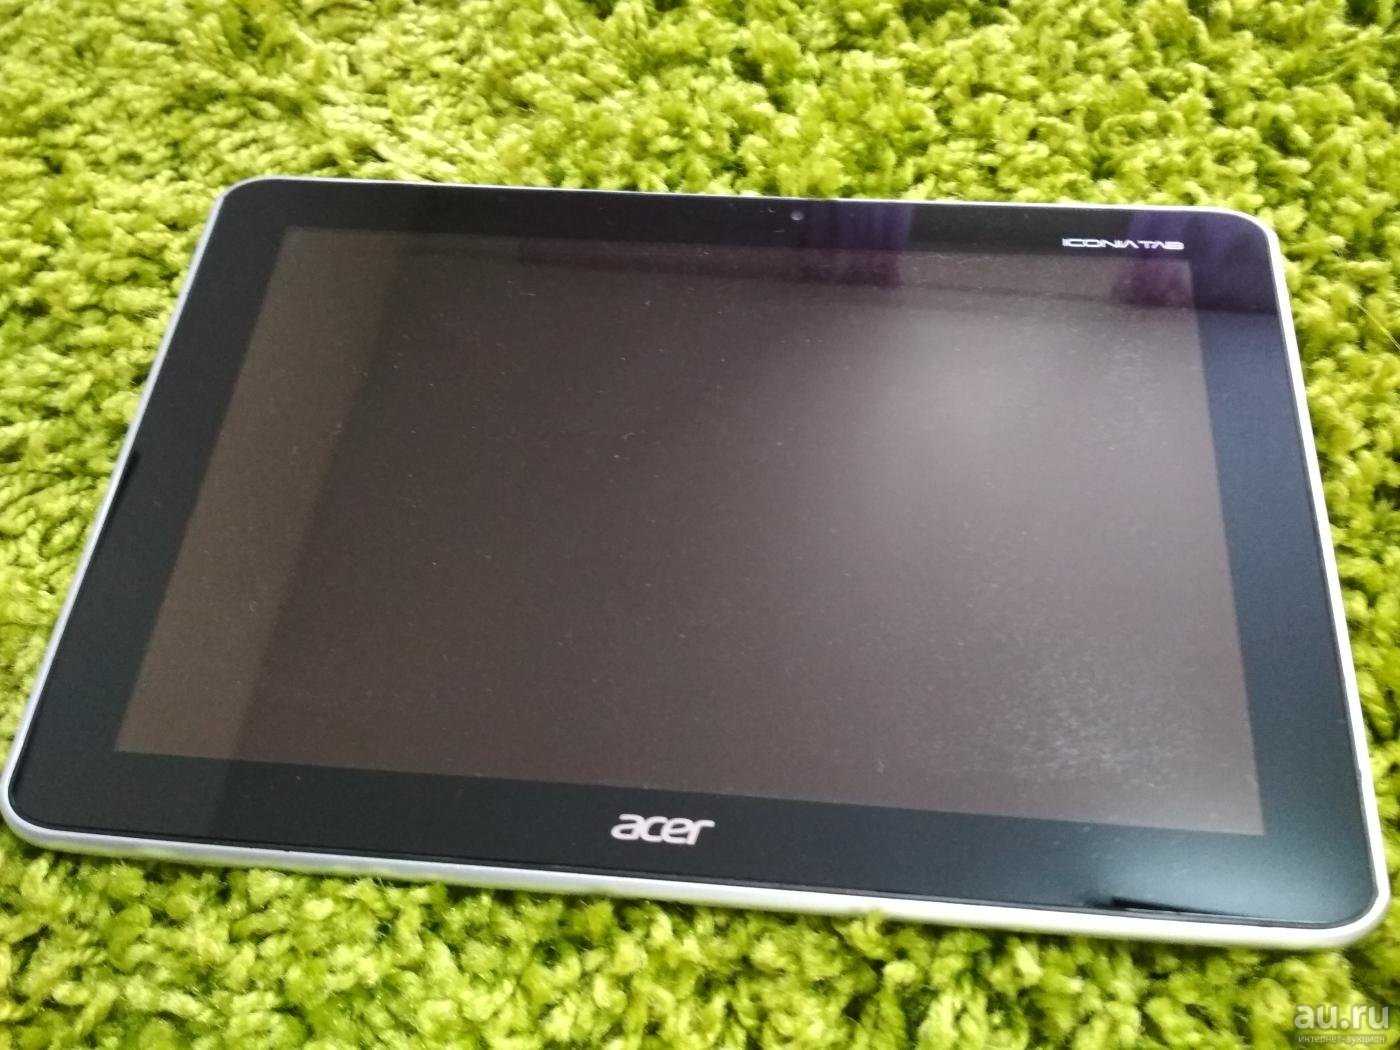 Acer iconia tab a511 16gb - купить , скидки, цена, отзывы, обзор, характеристики - планшеты